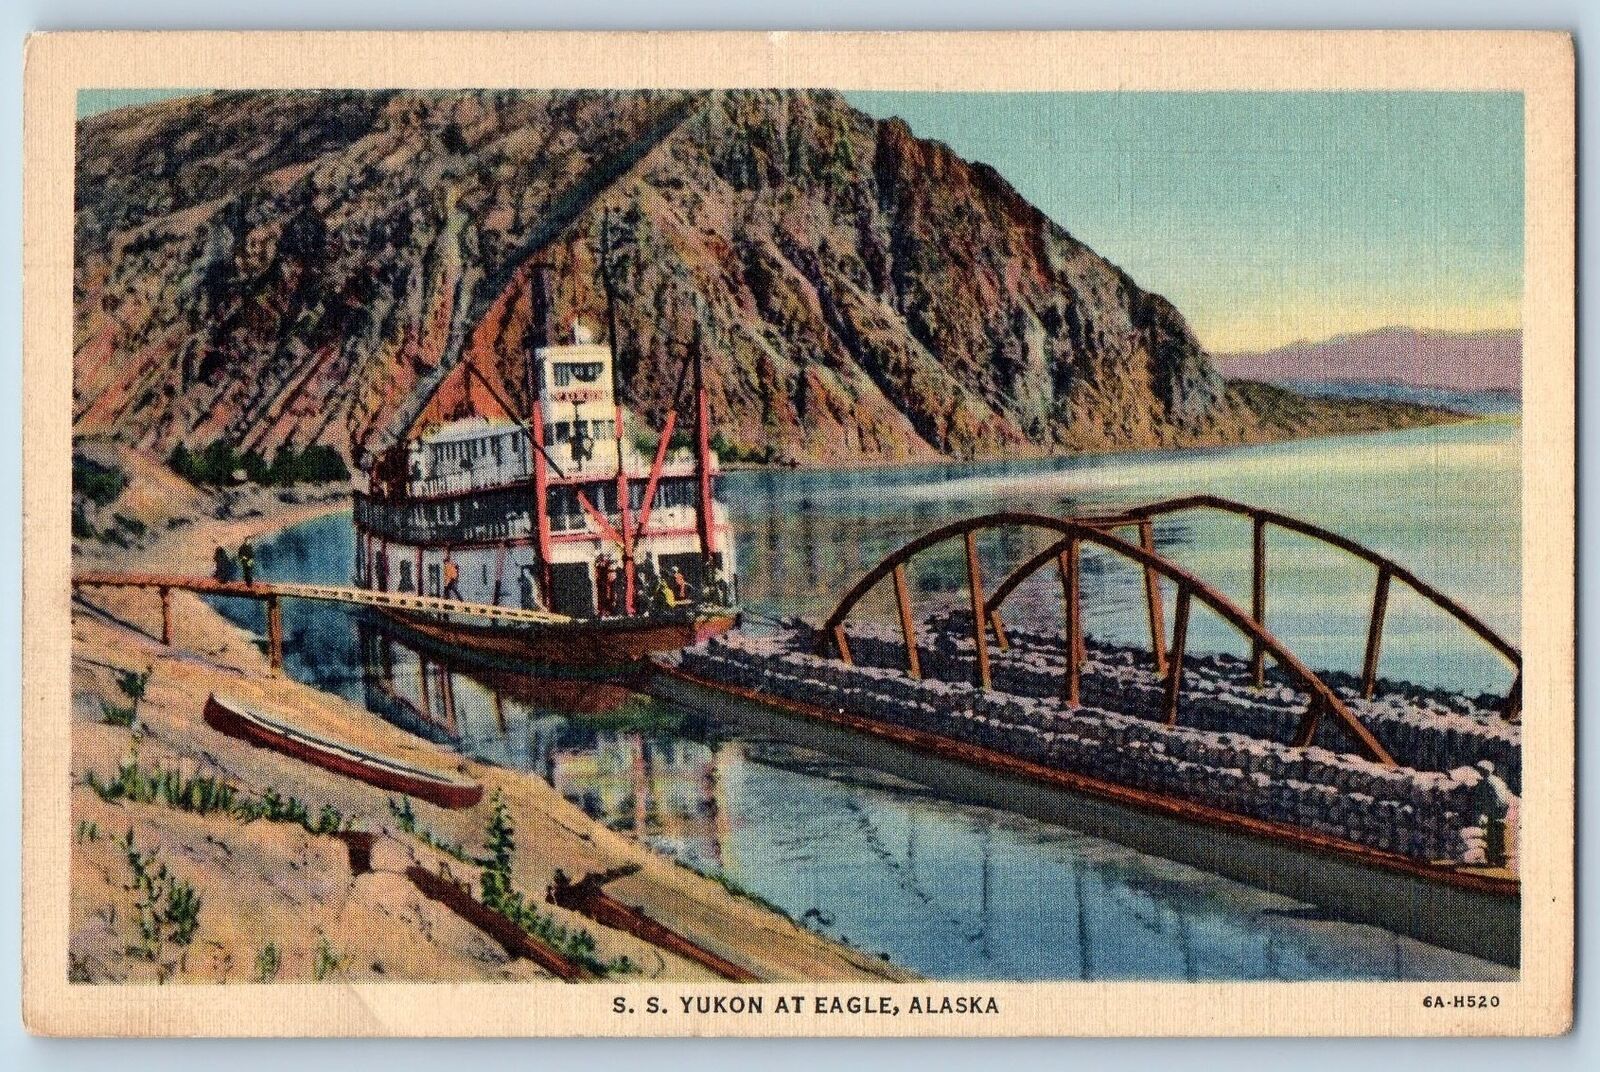 Eagle Alaska AK Postcard Steamship Yukon Dock Scenic View c1940's Vintage Boats